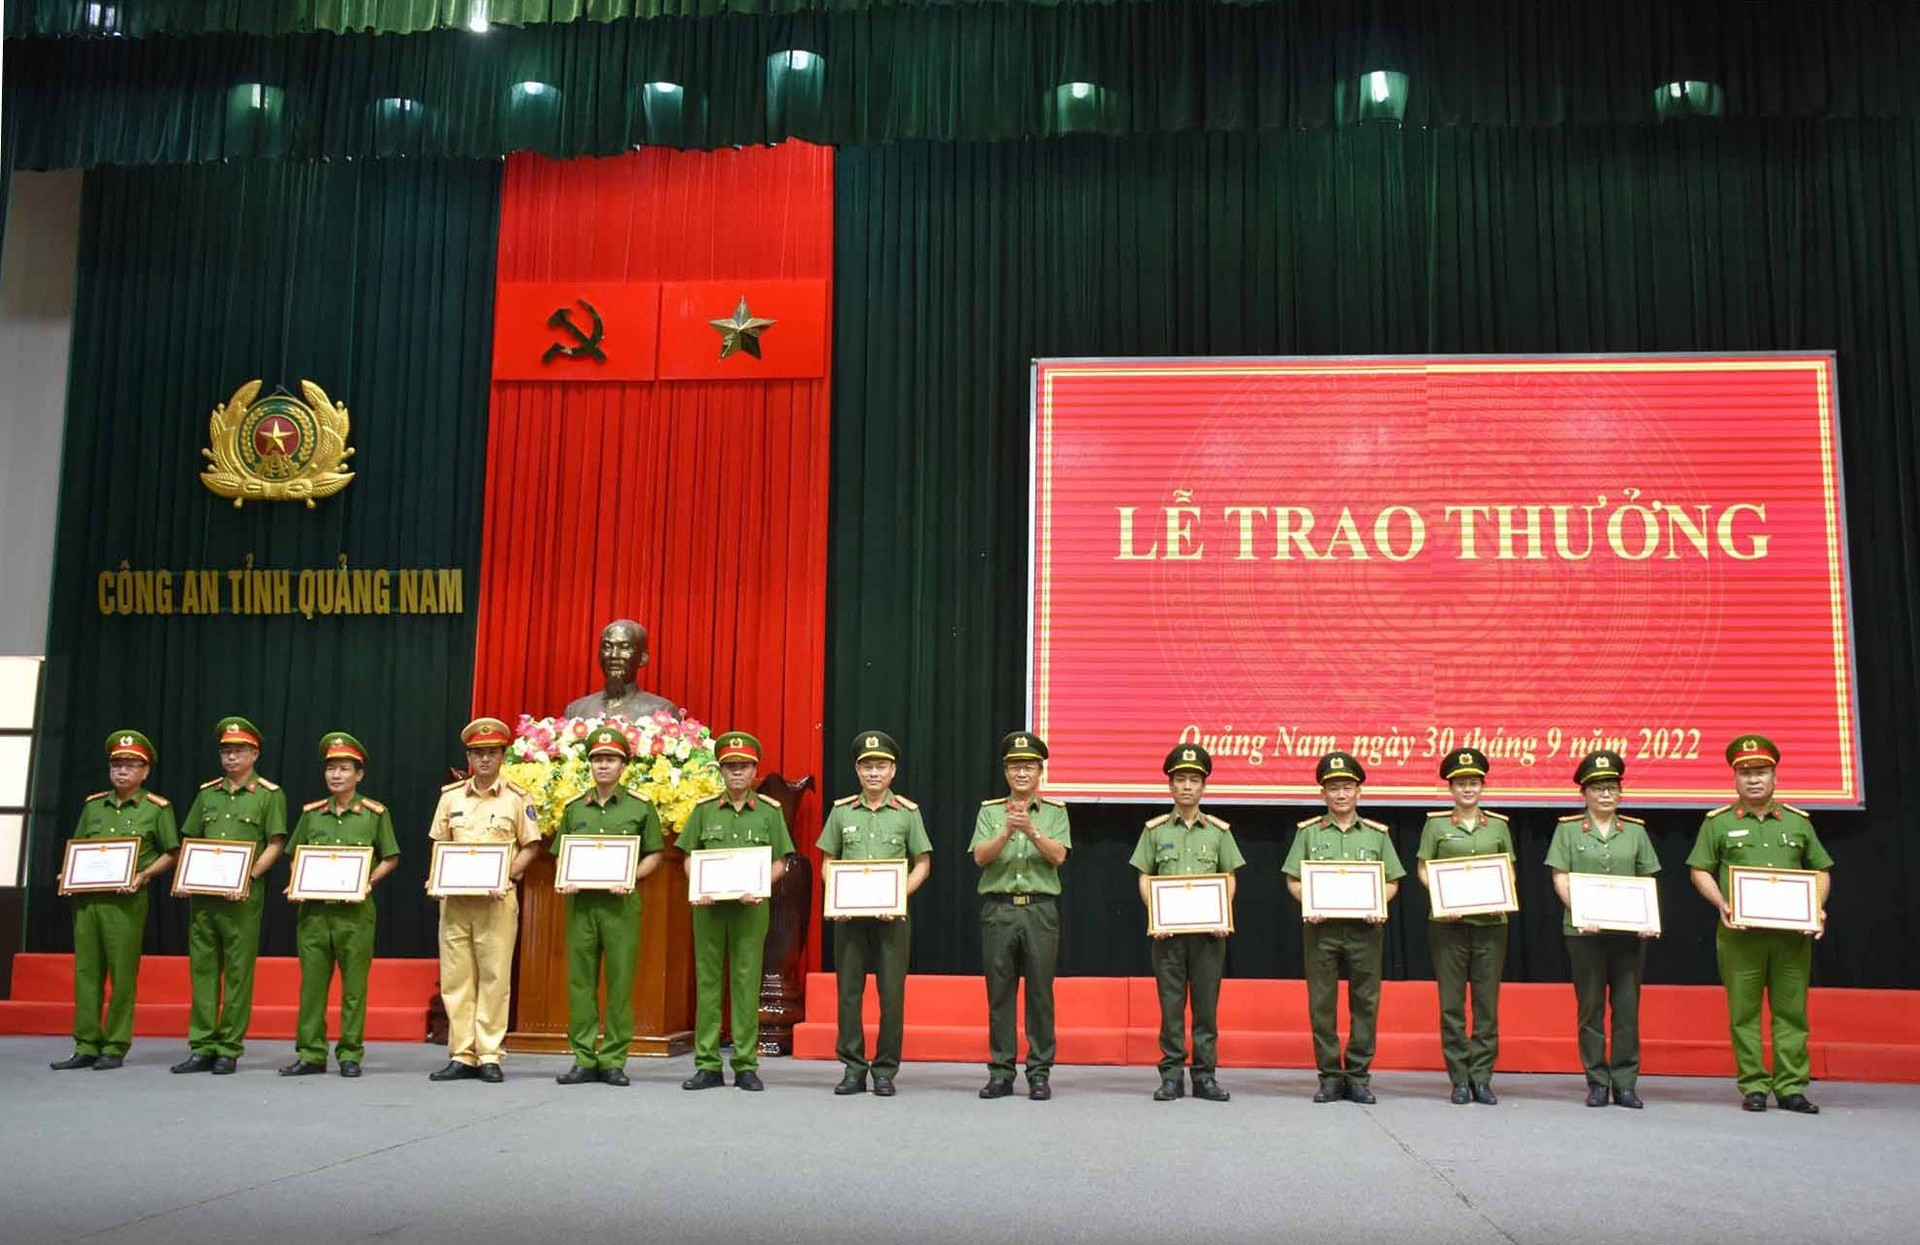 Đại tá Nguyễn Thành Long - Phó Giám đốc Công an tỉnh trao giấy khen của Giám đốc Công an tỉnh cho các tập thể có thành tích xuất sắc trên các mặt công tác. Ảnh: M.T